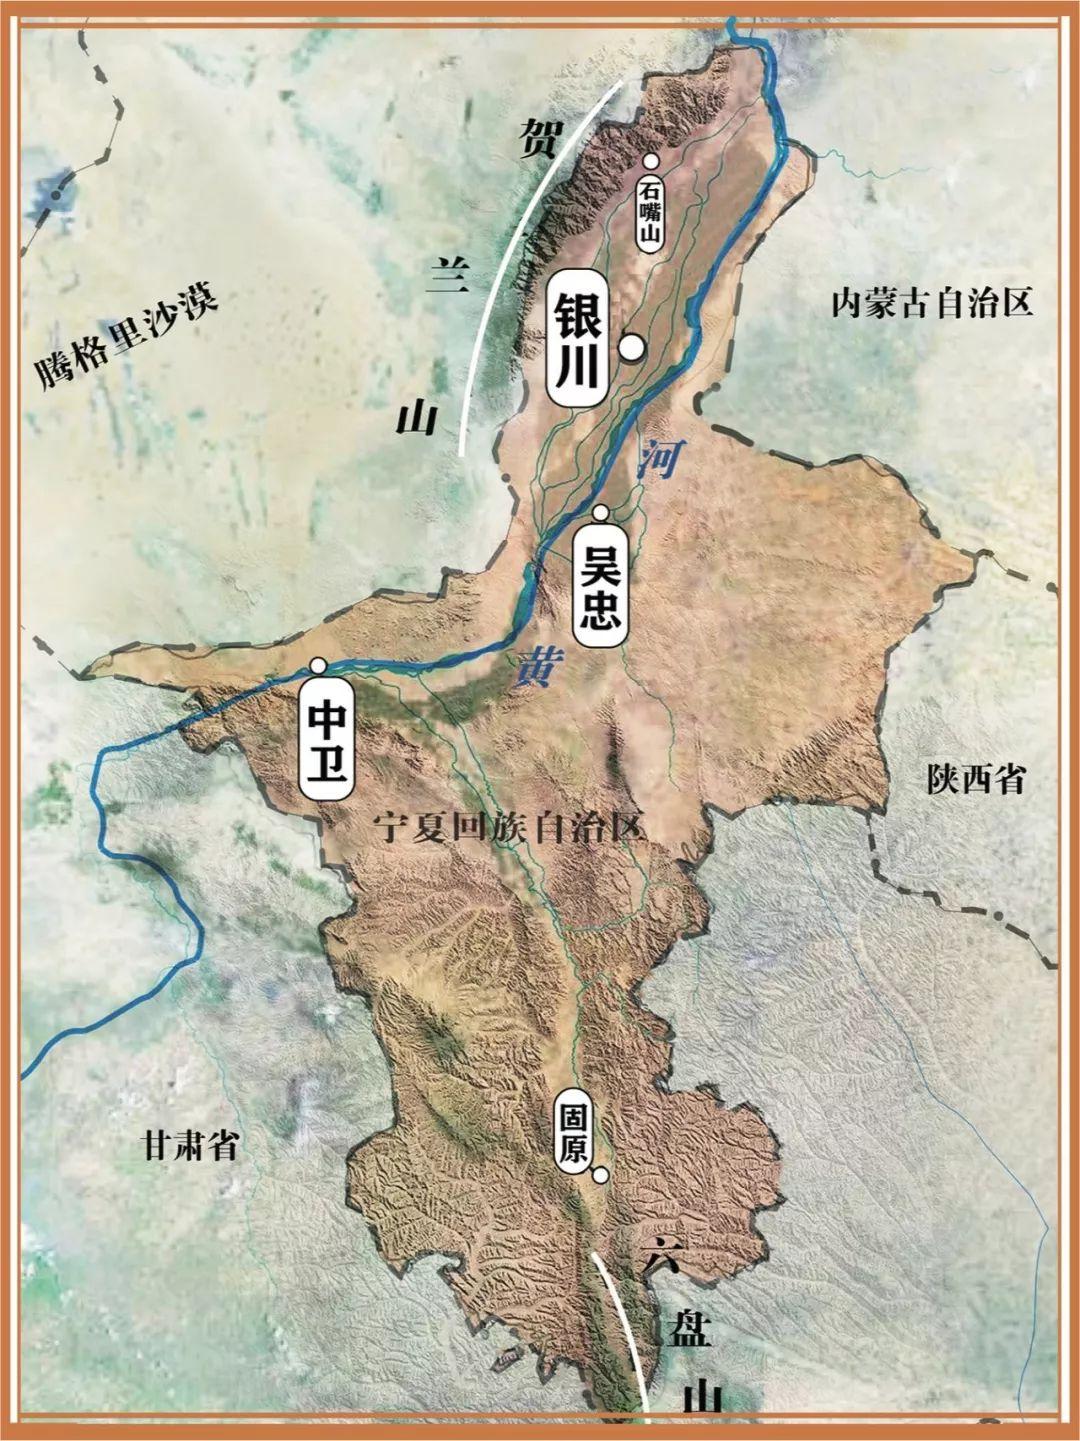 西夏王陵,贺兰山,青铜峡……关于宁夏,你应该知道些什么? 